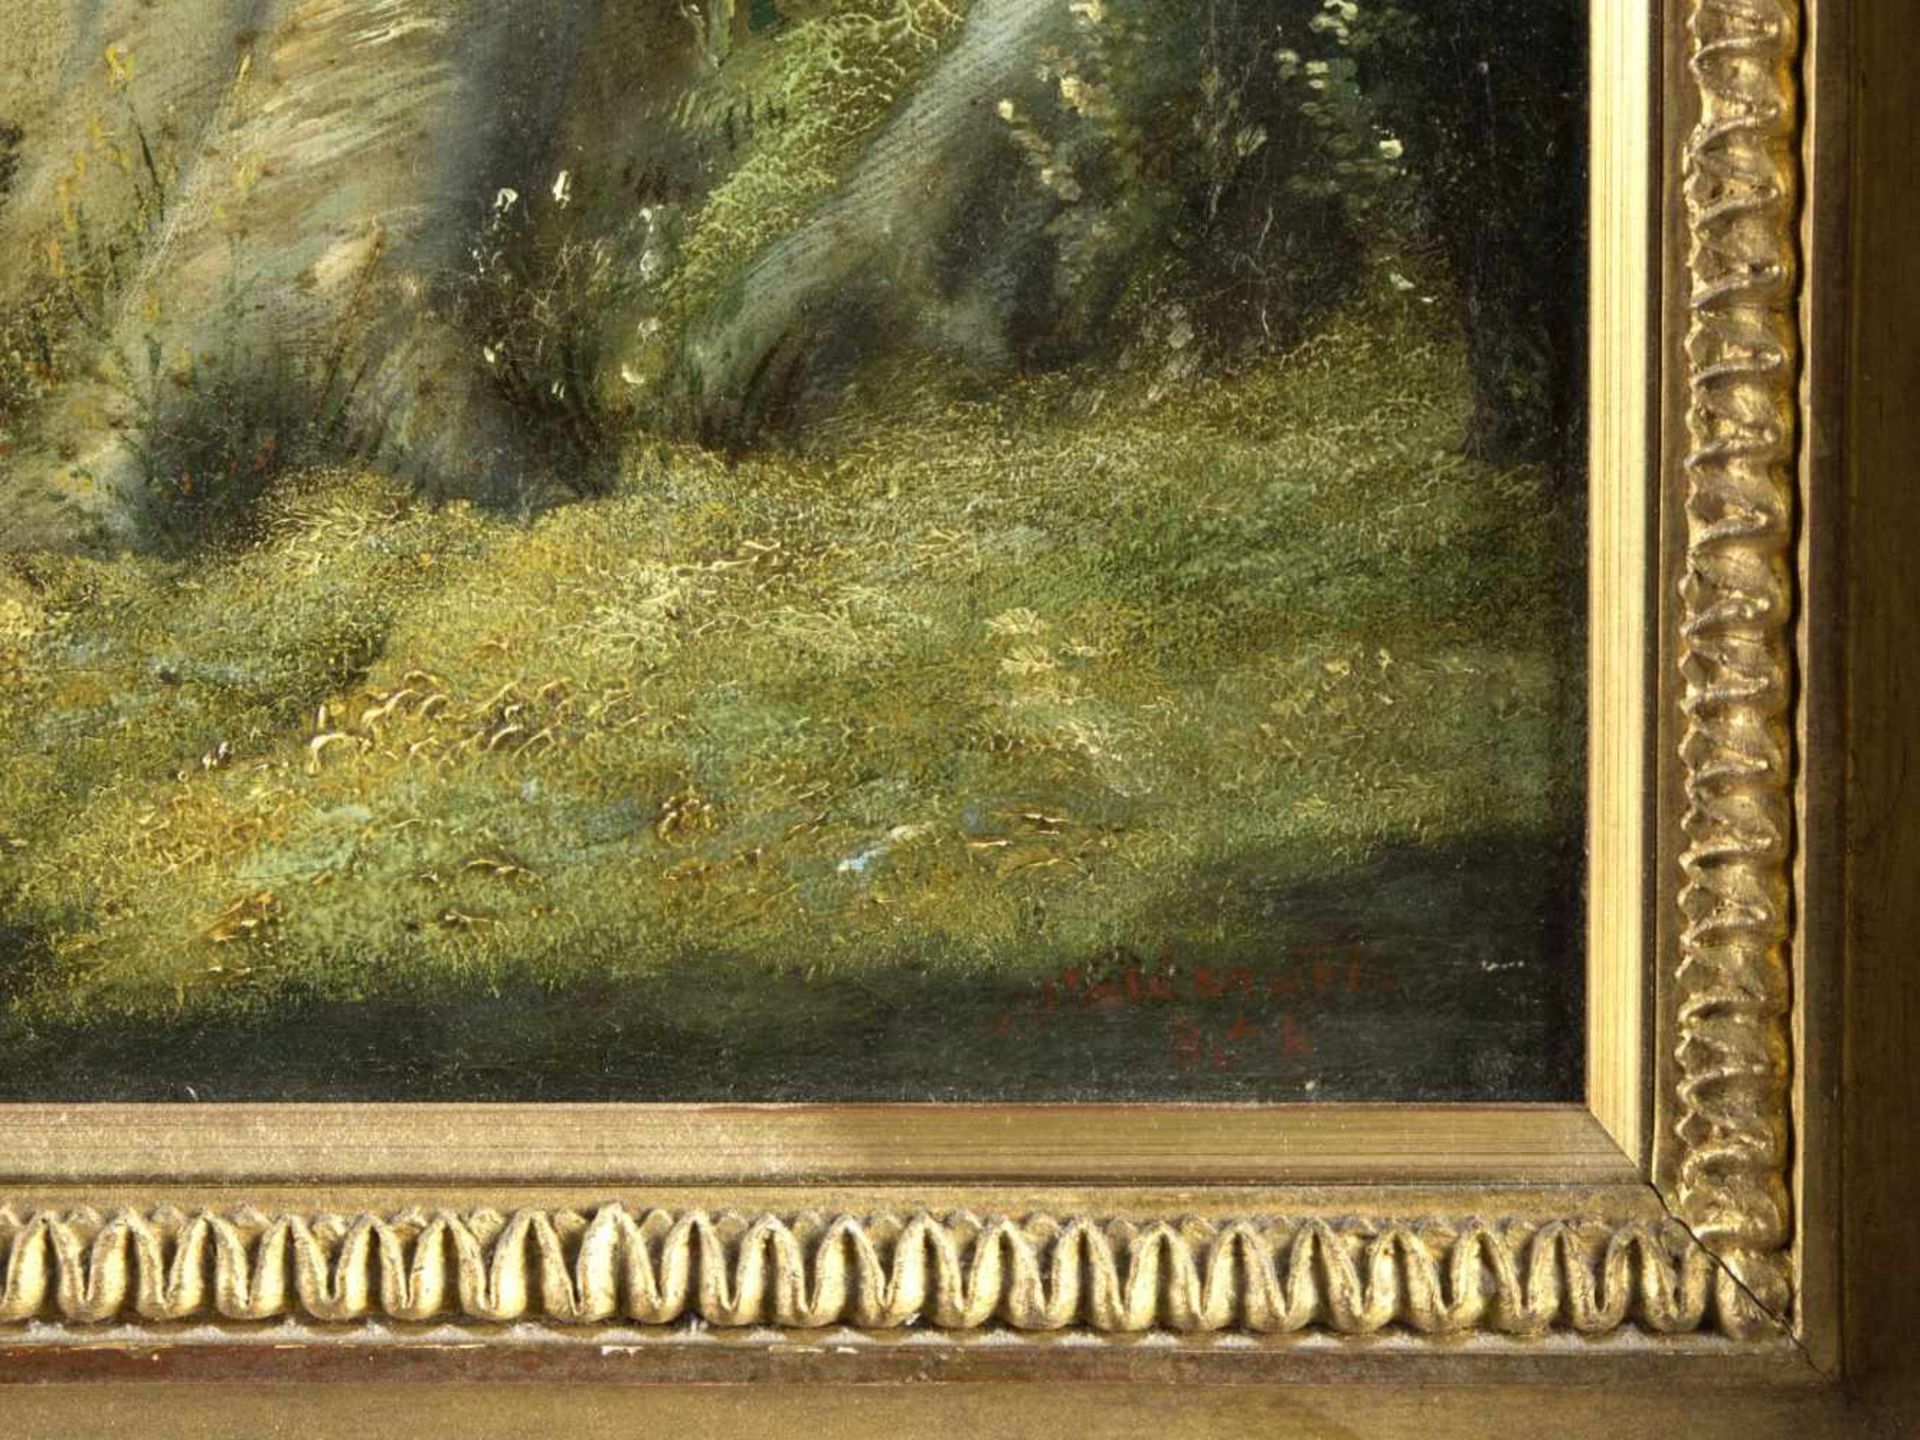 WaldenfelsEin Paar an einem kleinen Häuschen in einem Wald. Öl/Lwd. Sign. und dat. 1858. 56 x 75,5 - Bild 2 aus 4